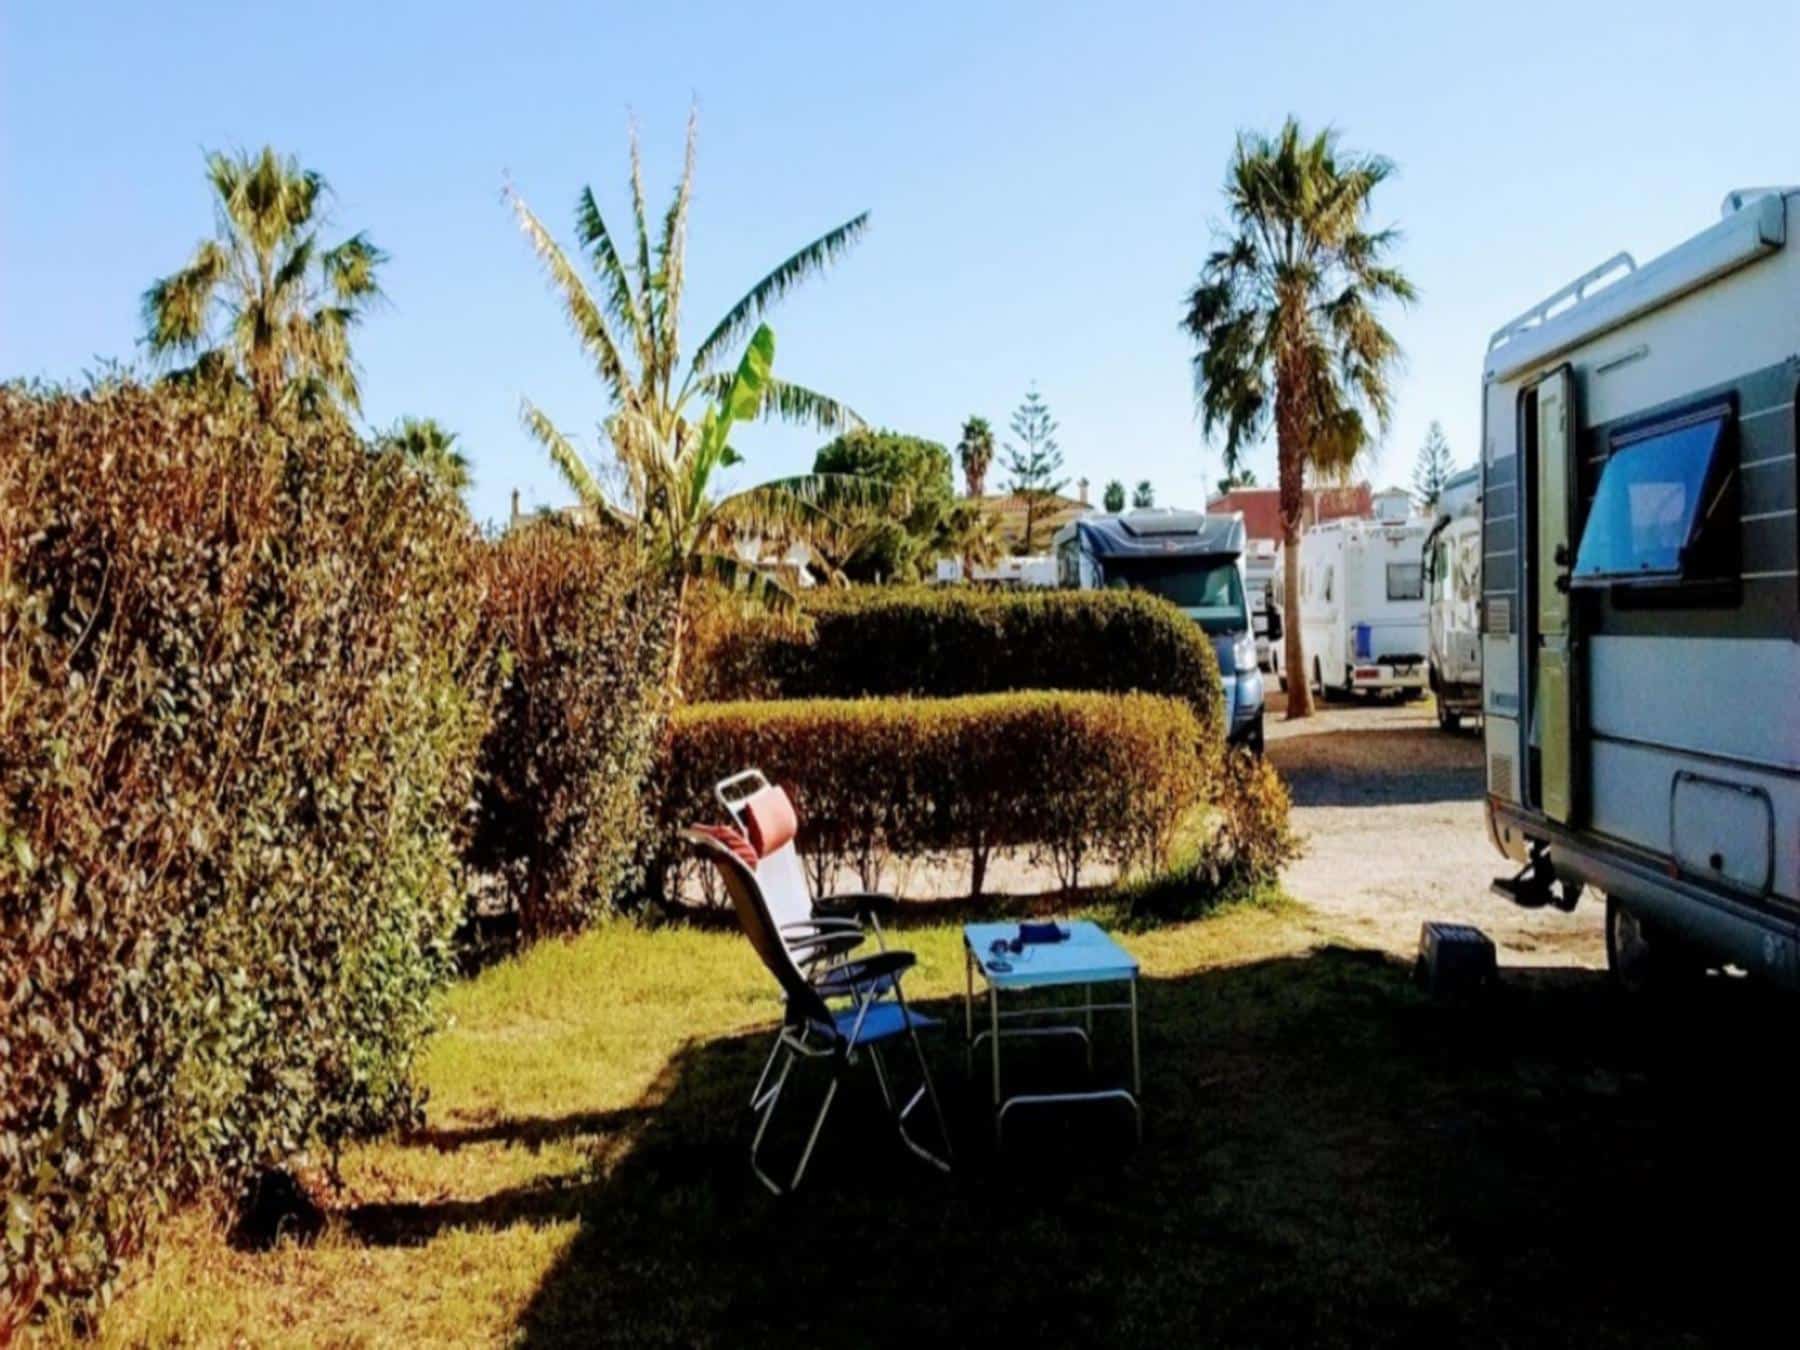 Área Sanlucar AC Parking, de Barrameda, Cádiz. | Áreas Autocaravanas